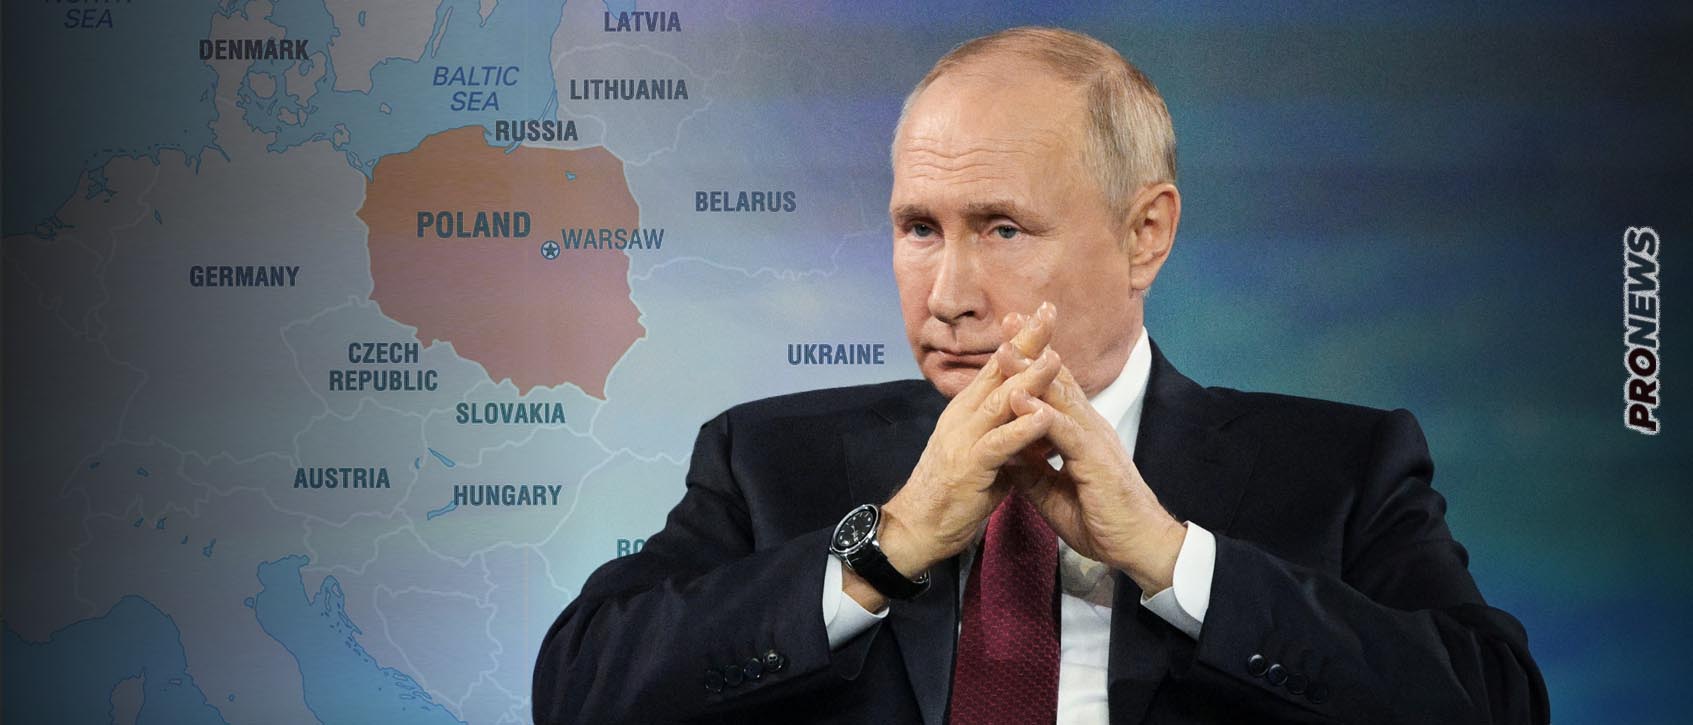 Β.Πούτιν: «Κλείνει το μάτι» στην Πολωνία – «Η δυτική Ουκρανία είναι πολωνική περιοχή»